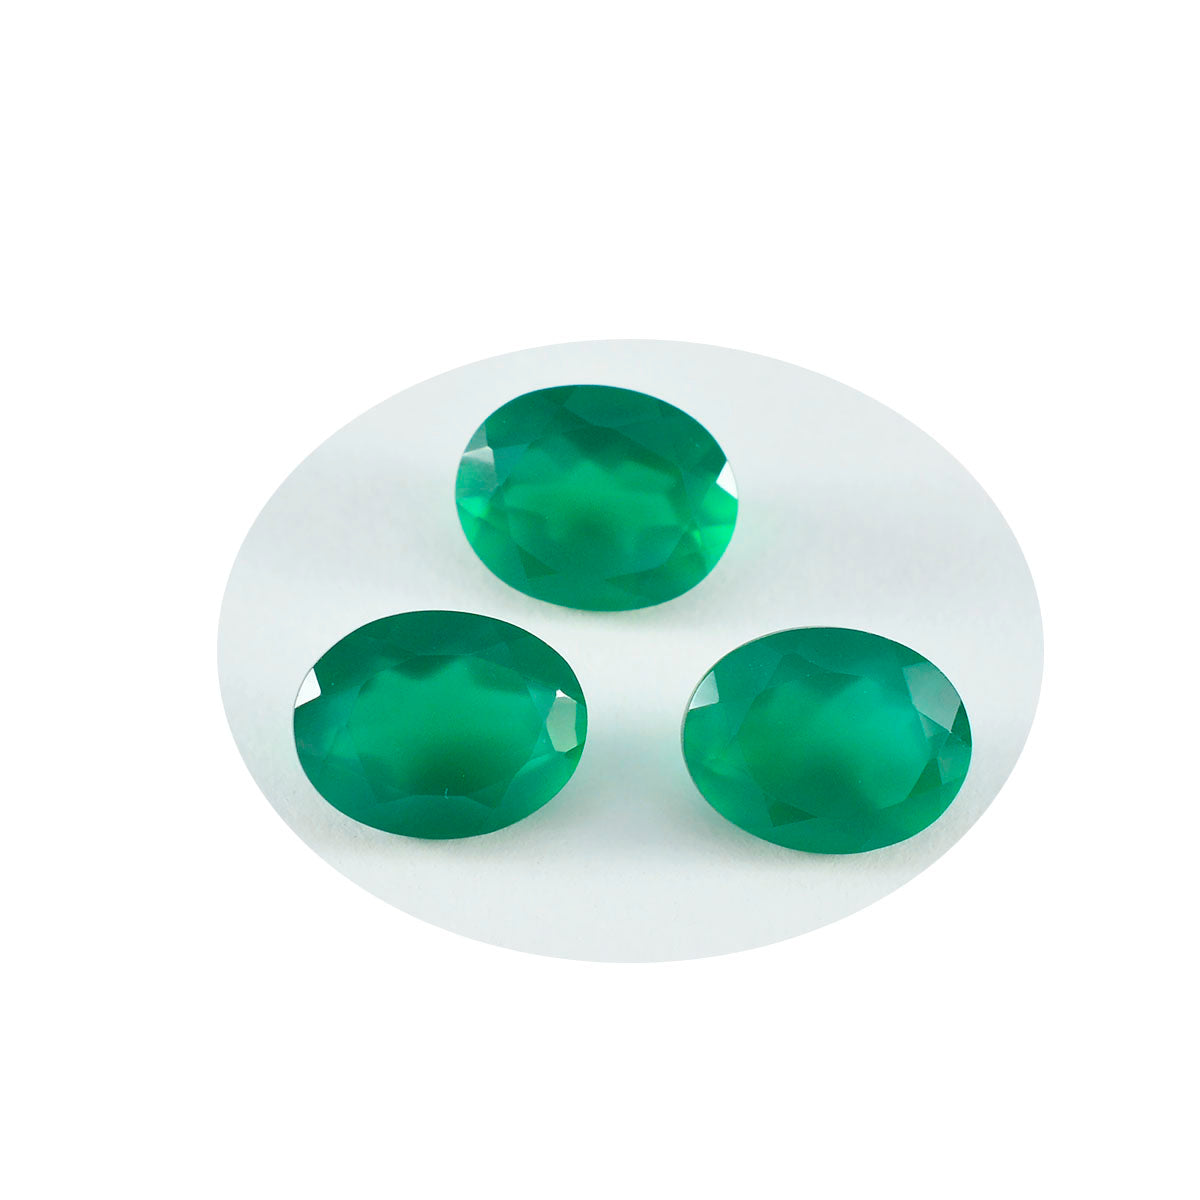 riyogems 1шт натуральный зеленый оникс ограненный 8х10 мм драгоценные камни овальной формы отличного качества